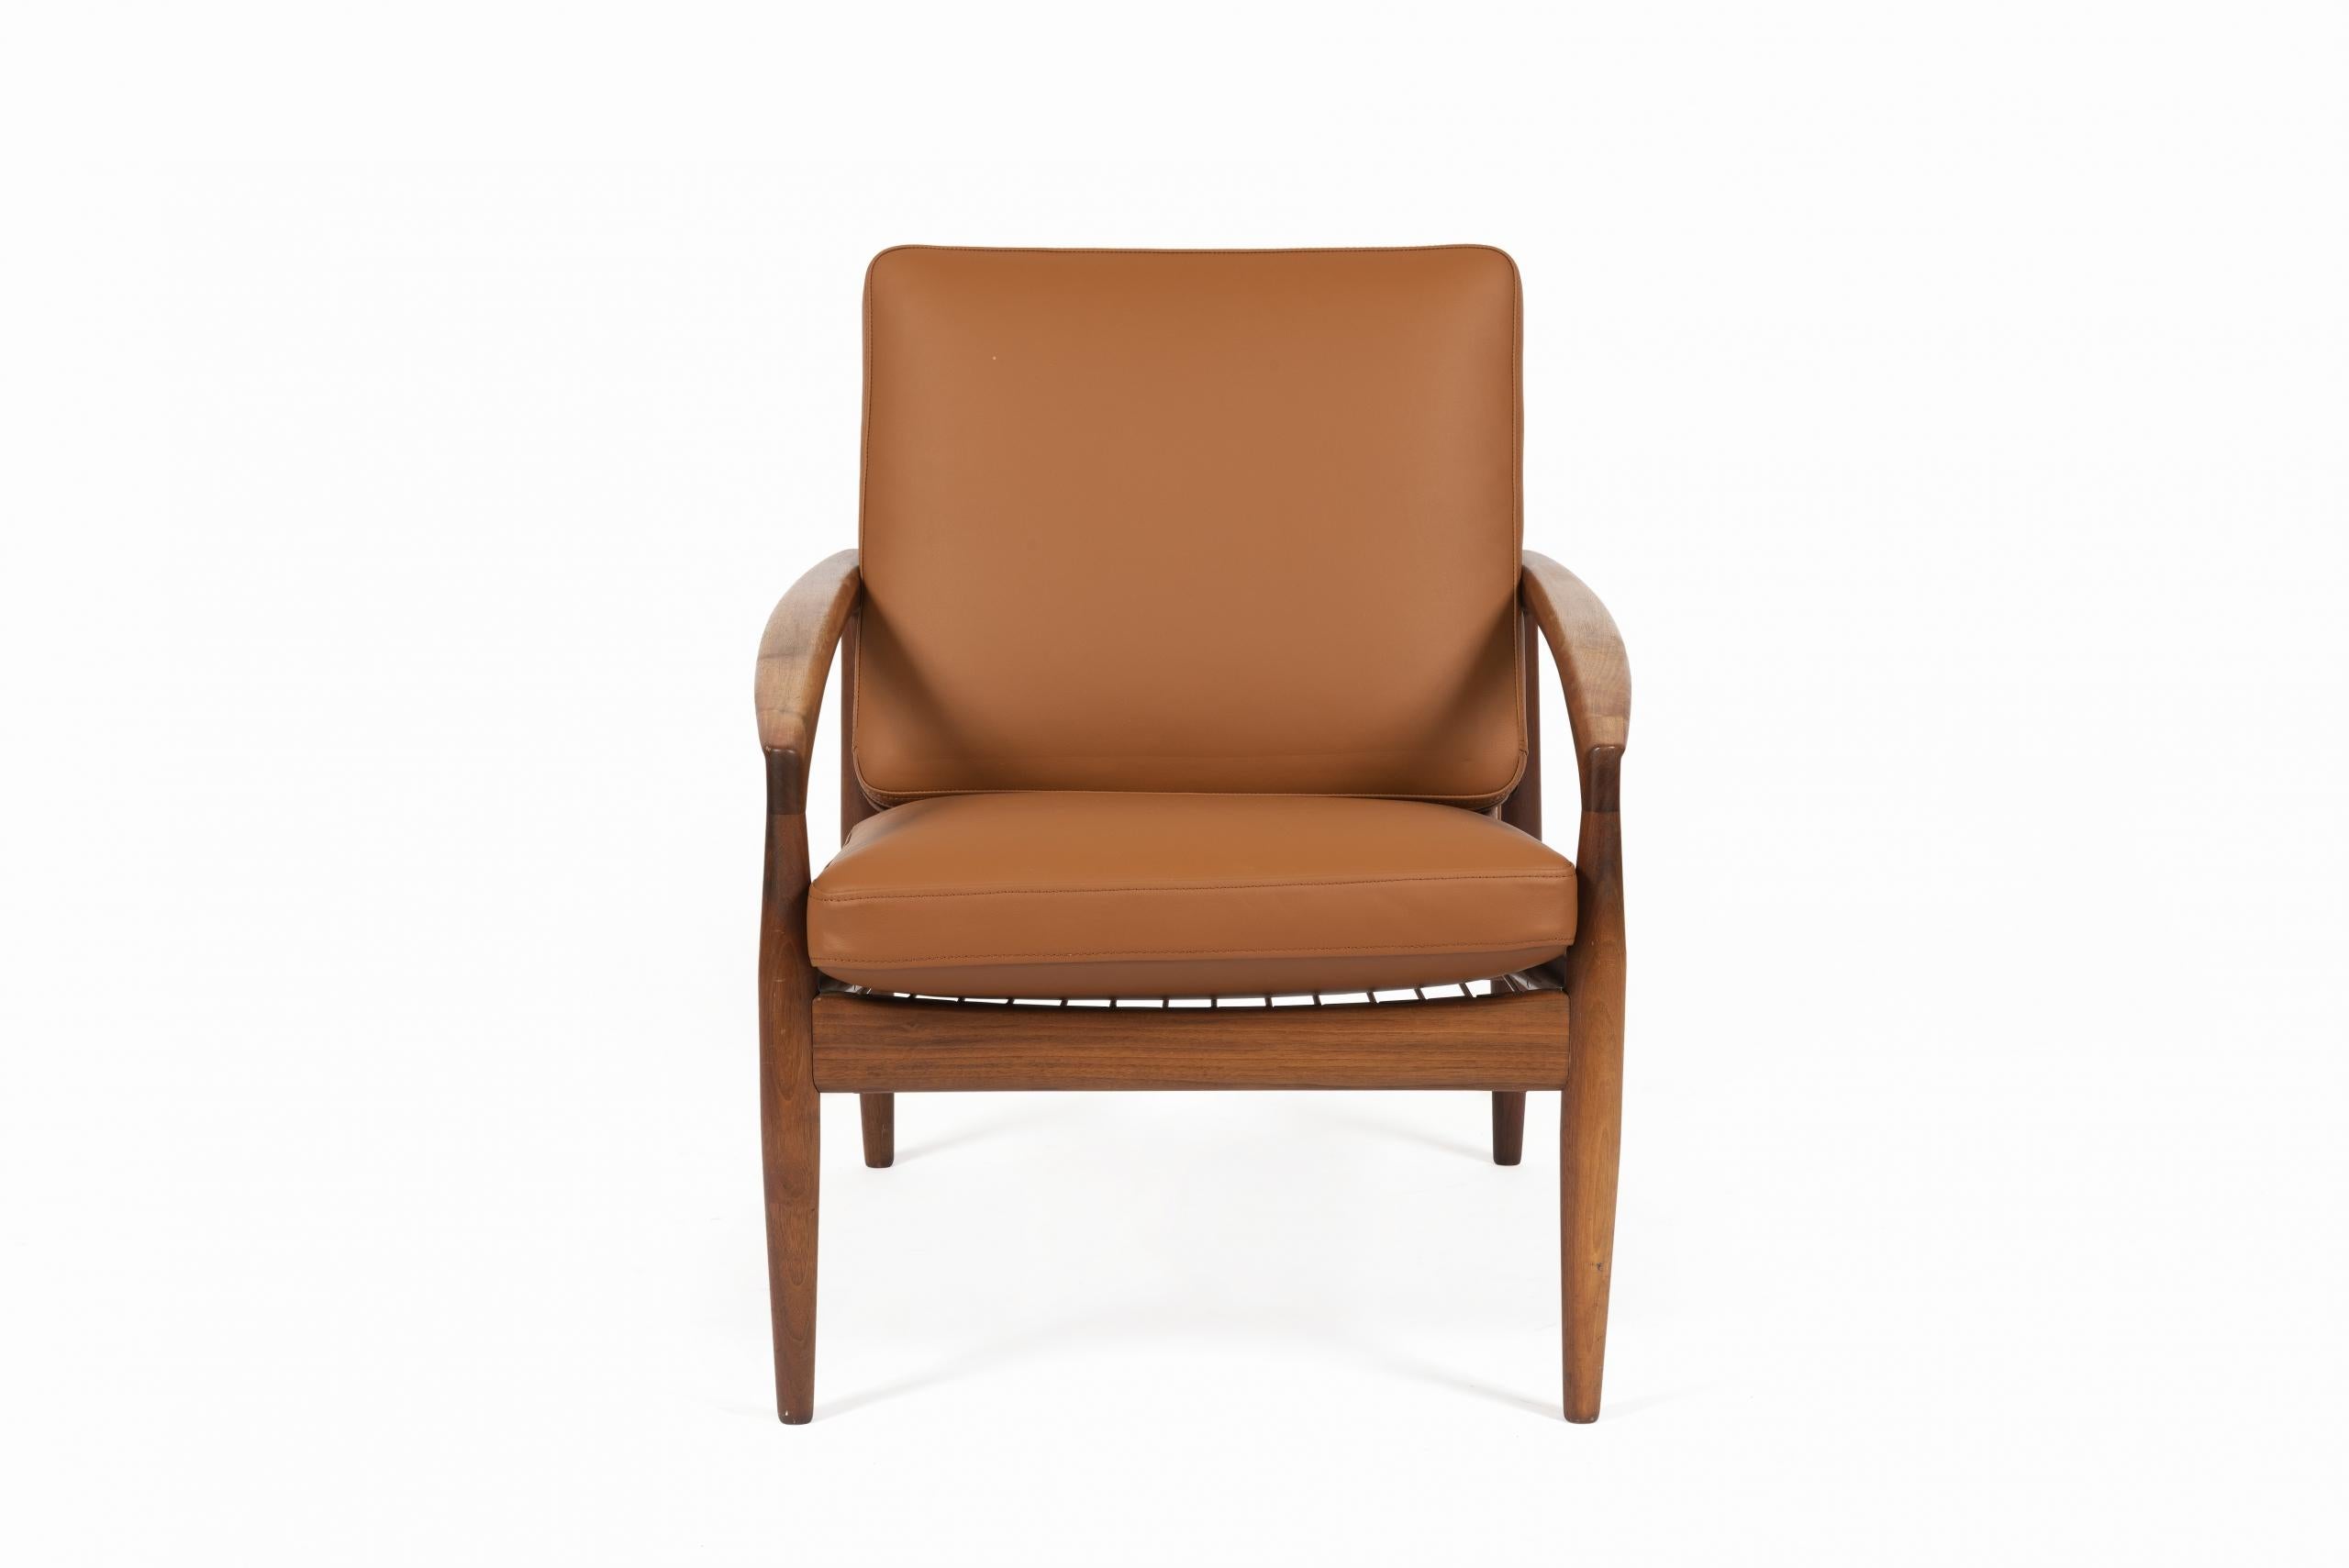 Paire de fauteuils design, modèle 121, ‘Paper Knife’, Kai Kristiansen pour Magnus Olesen, 1956.

La structure est en teck massif avec dossier et coussin d’assise en mousse, recouverts de cuir cognac.